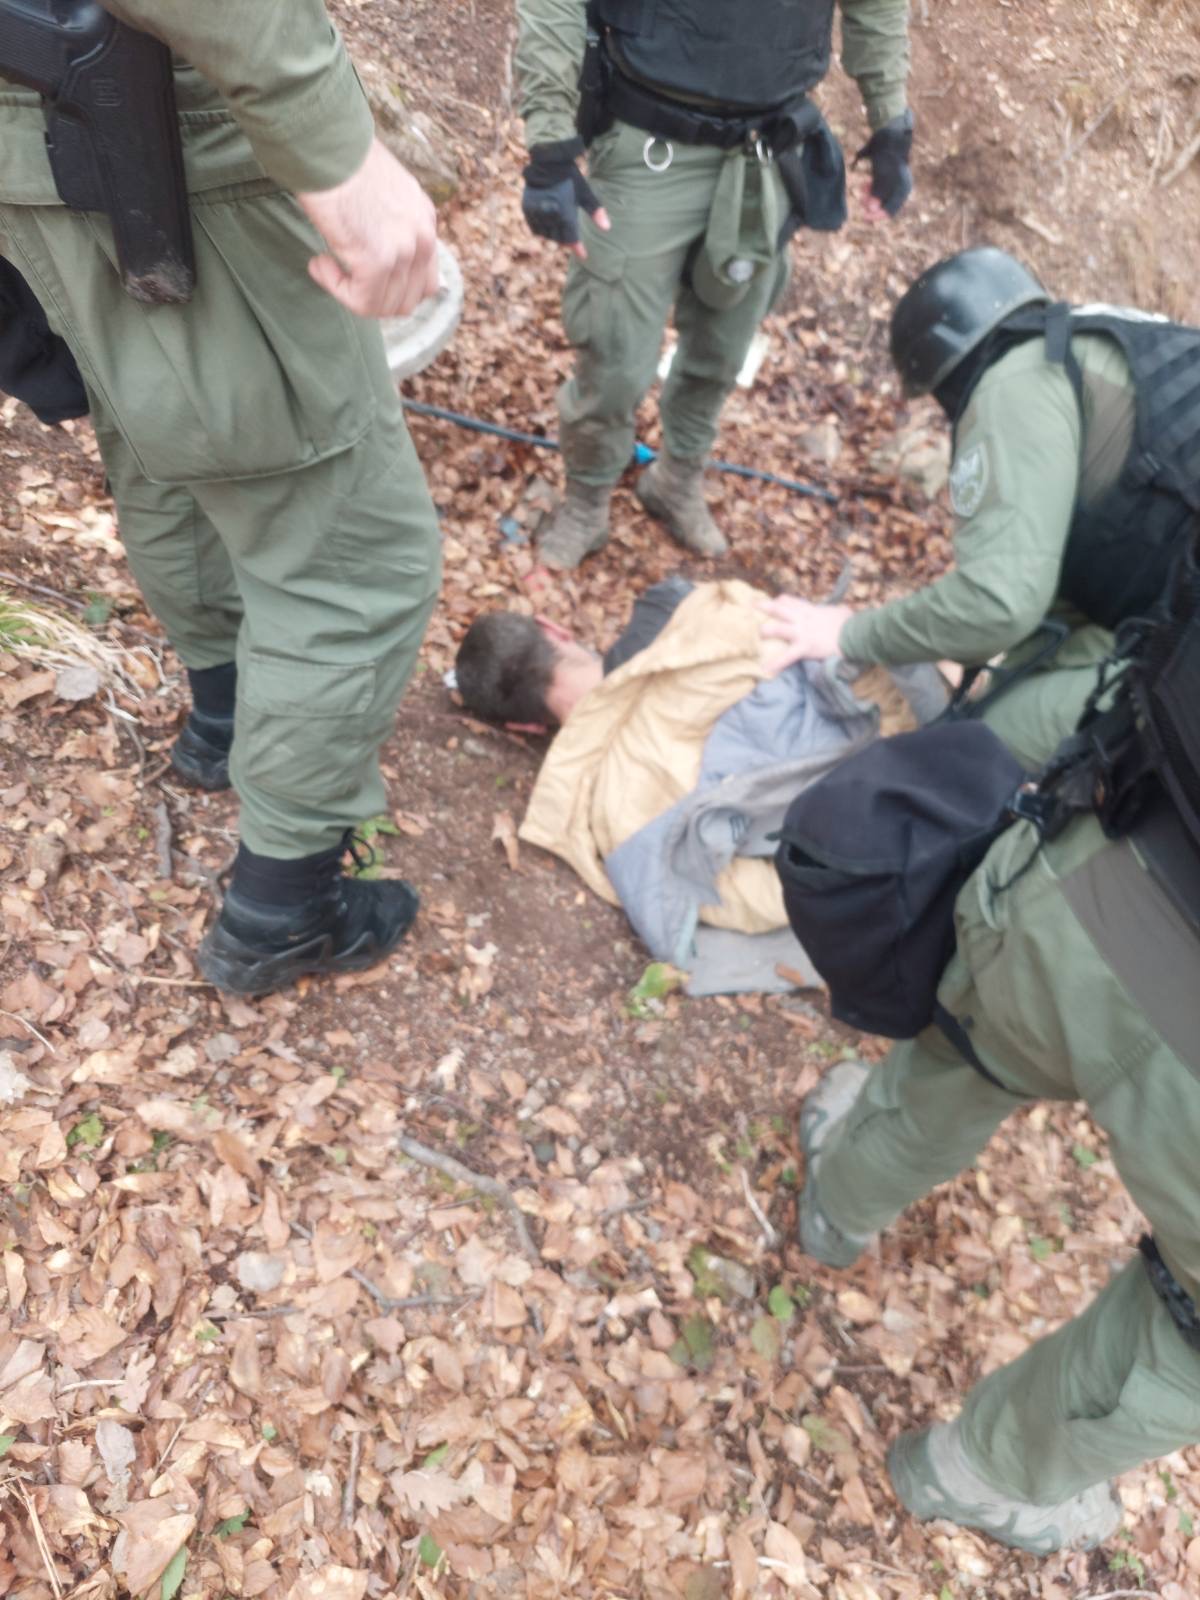 MUP ZDK: Nakon intenzivne potrage, policijski timovi lišili slobode lice E.V. zvani Rambo